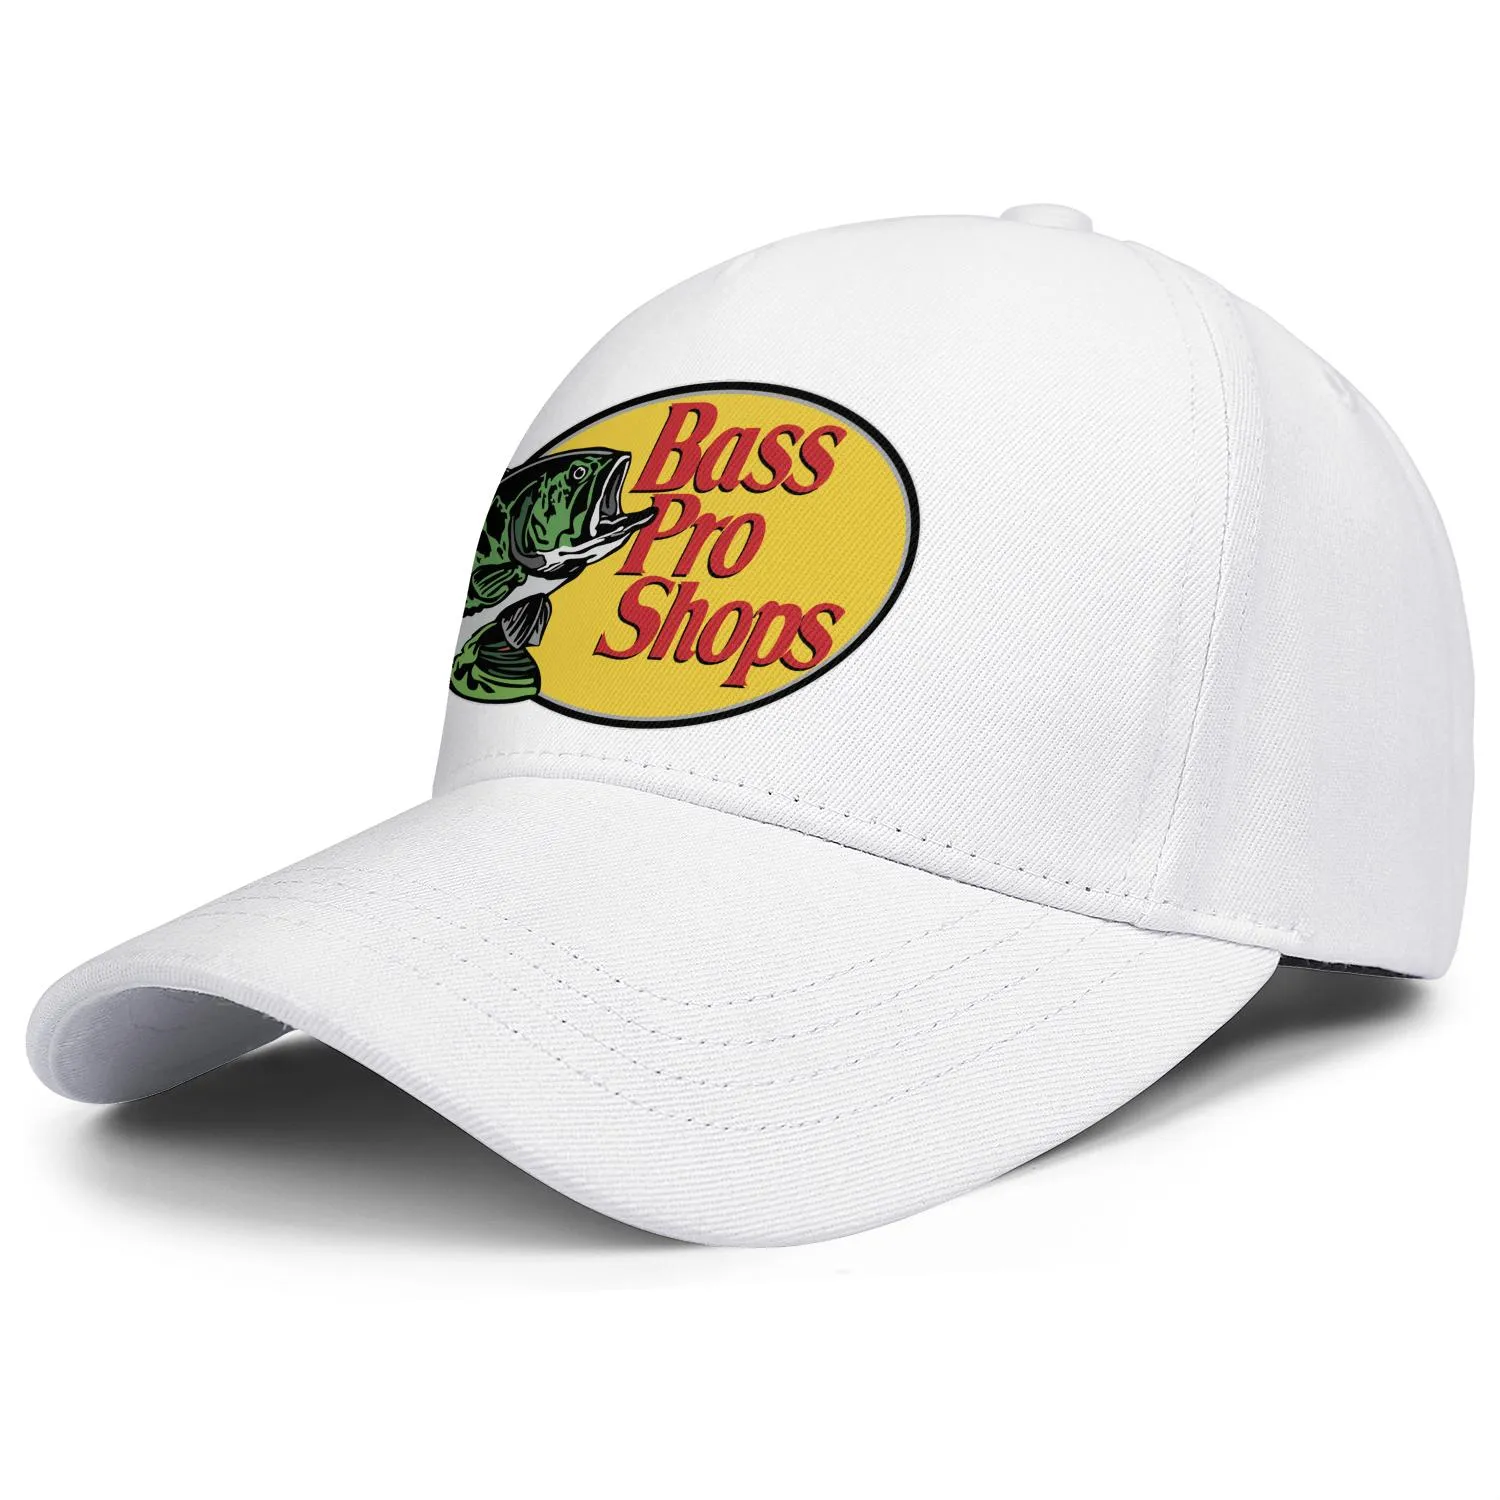 Модный магазин, оригинальный логотип для рыбалки, бейсболка унисекс, уникальные кепки для гольфа, камуфляжные серые 3D флаги США, розовый рак груди5309690